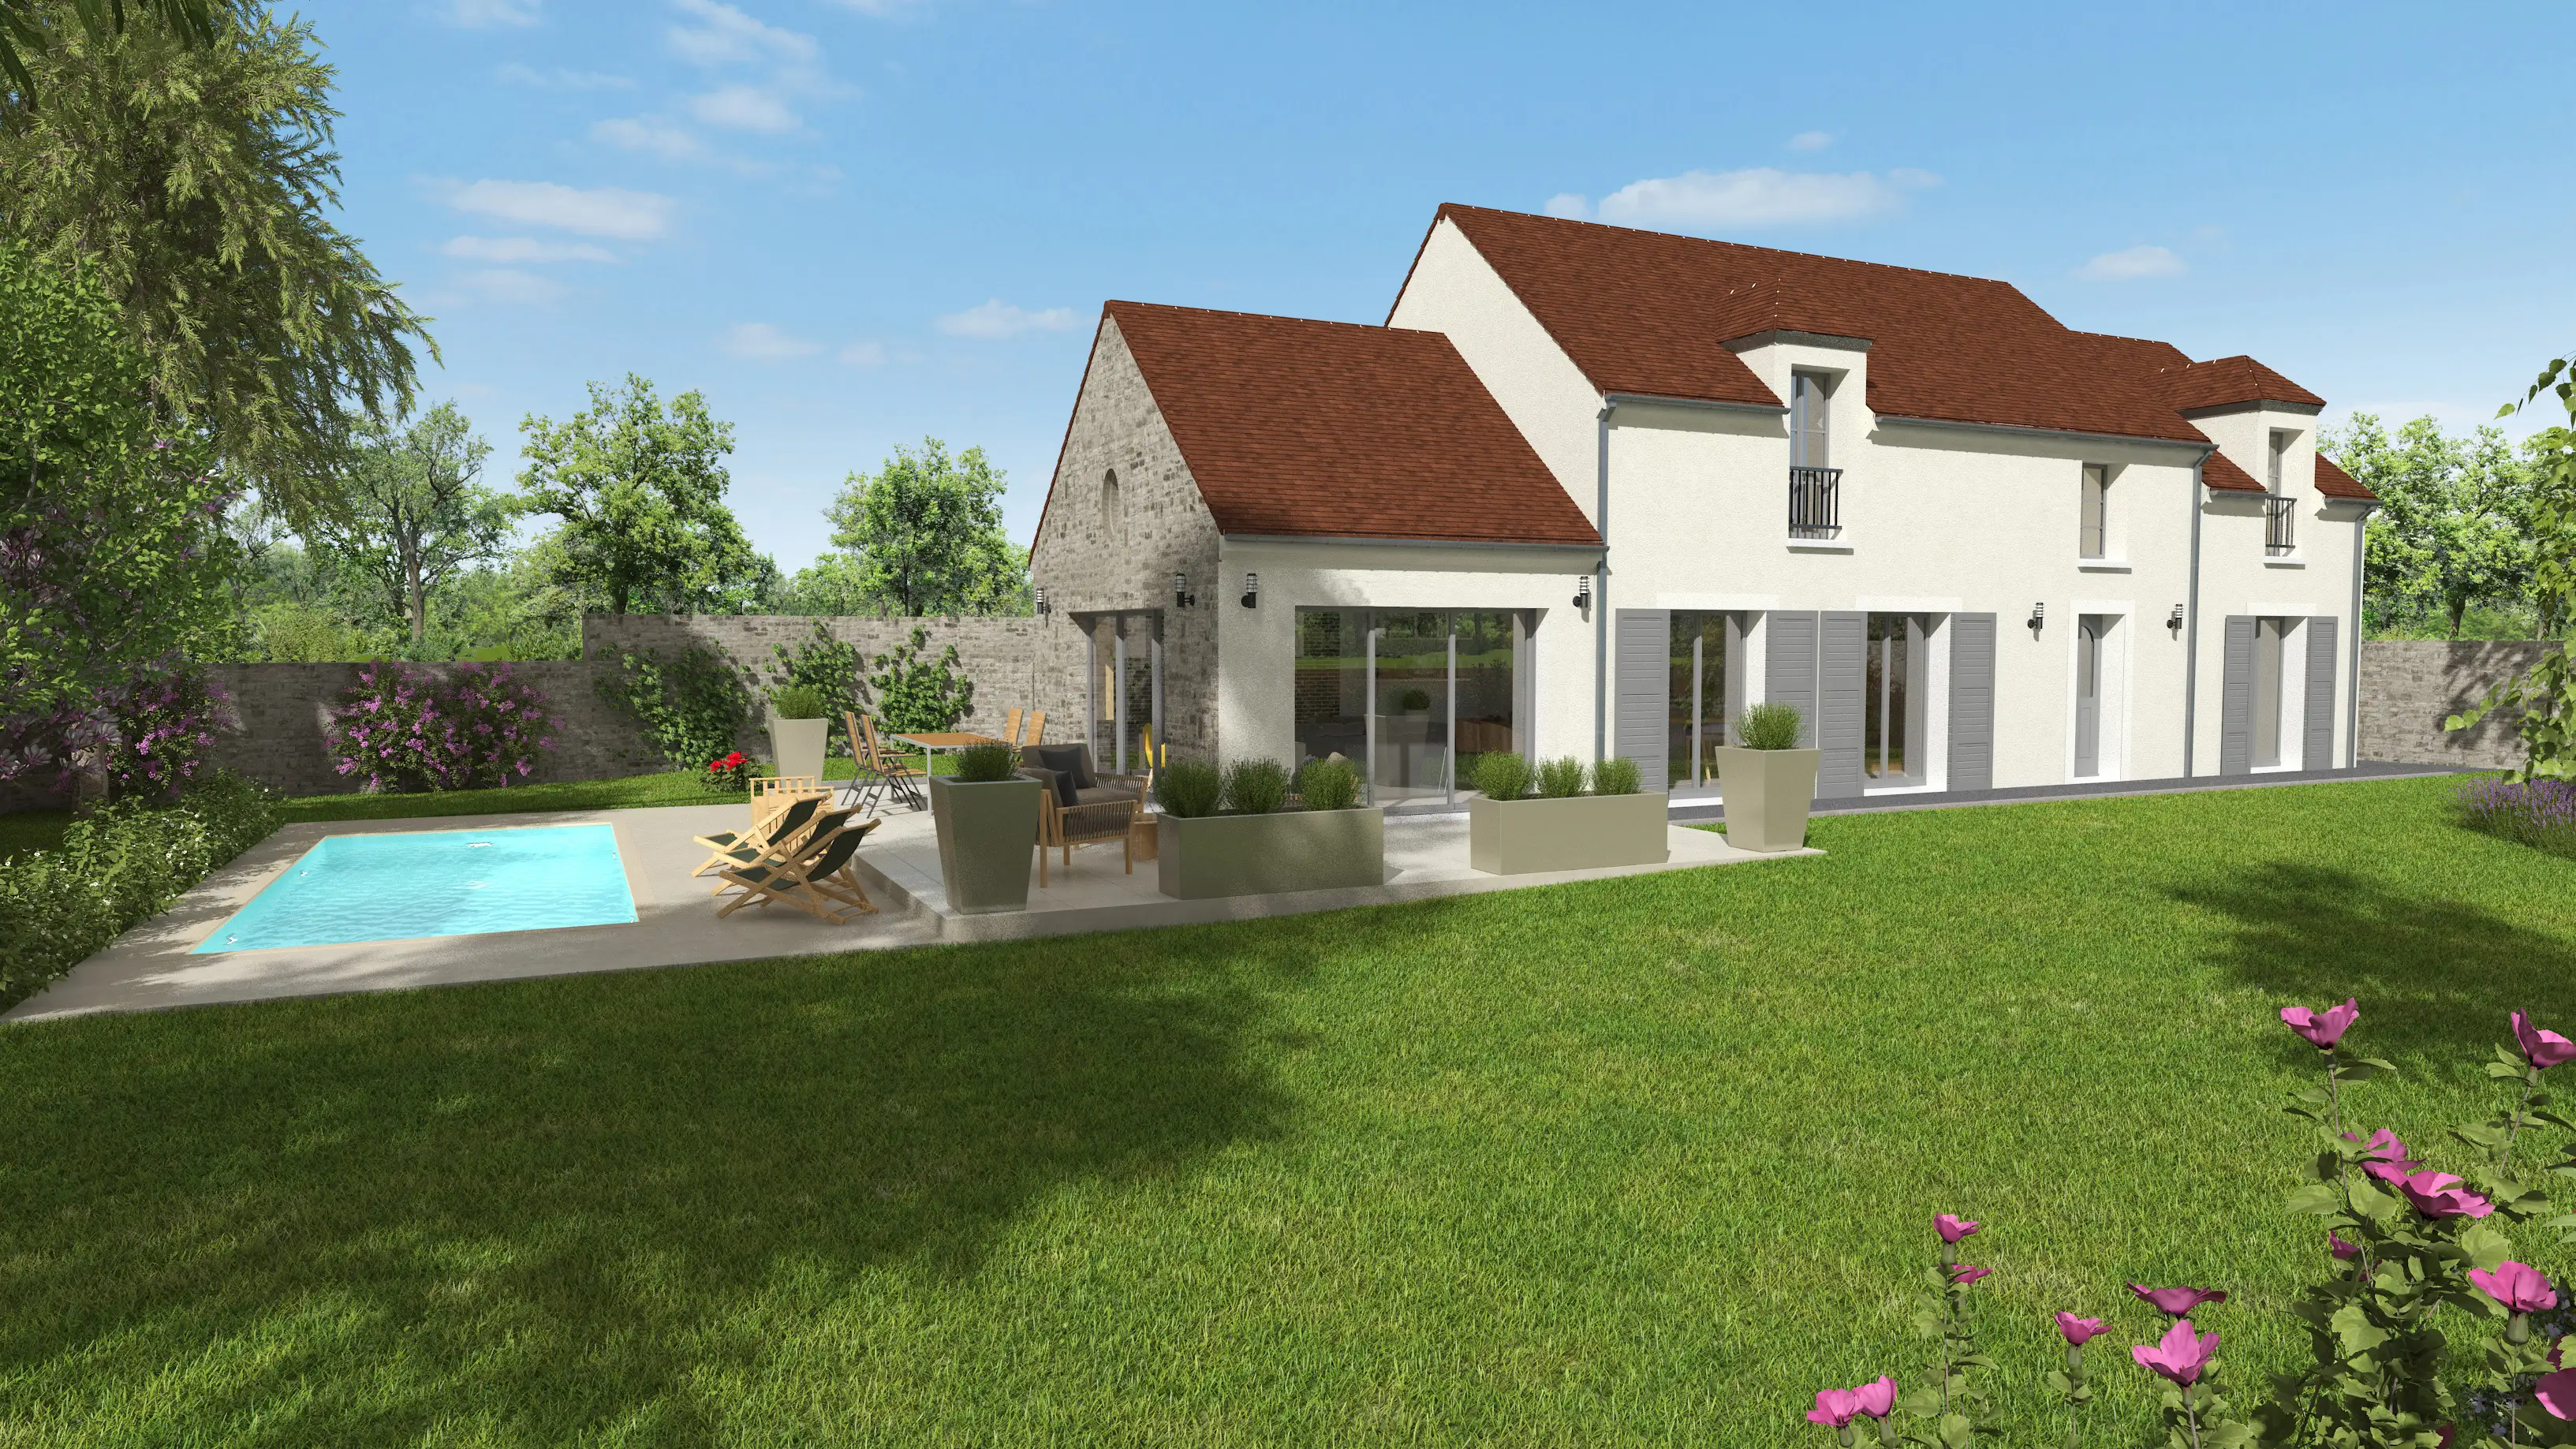 Image Maison neuve à vendre de 142 m² à Bourron-Marlotte (77)